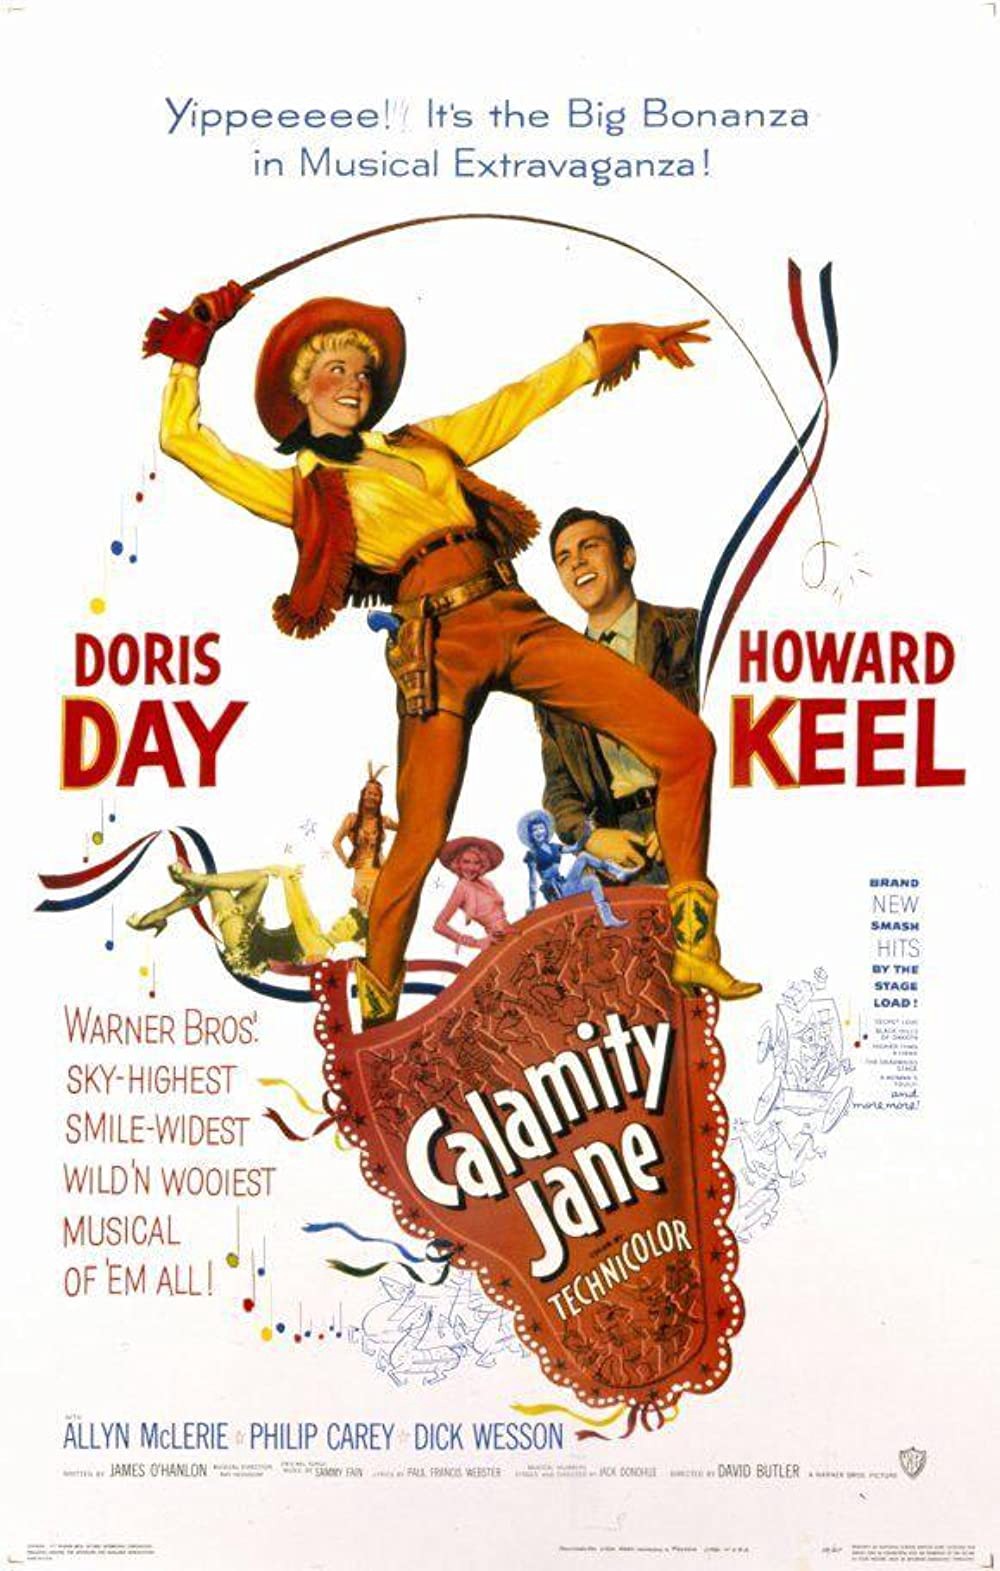 Calamity Jane (film) Warner Bros